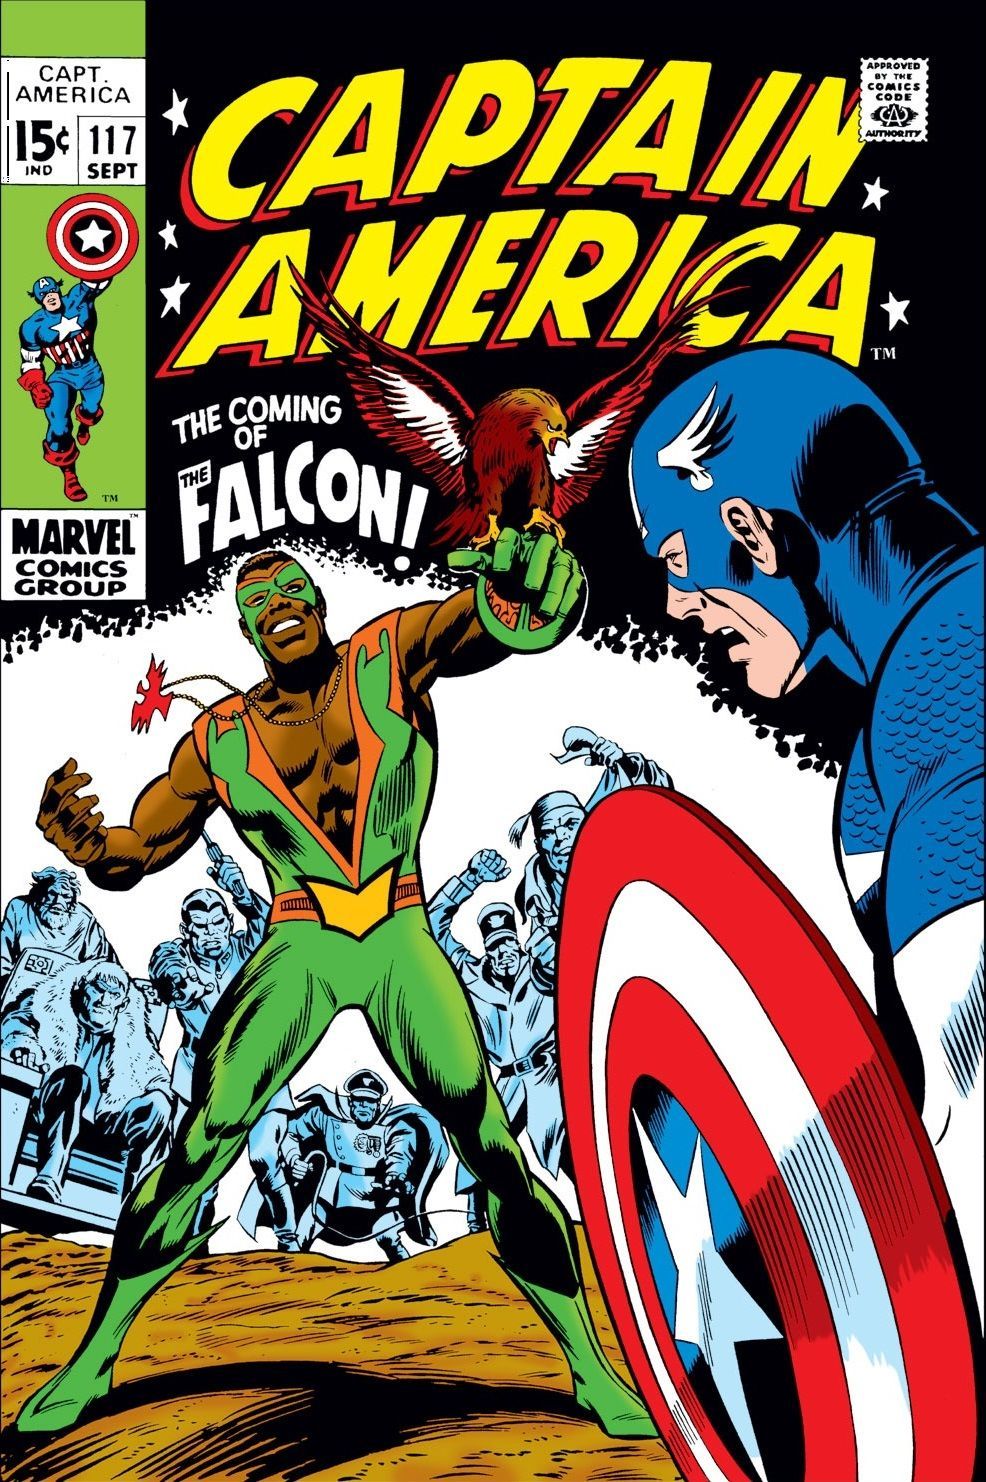 Hvad brækkede Captain America / Falcon-partnerskabet?